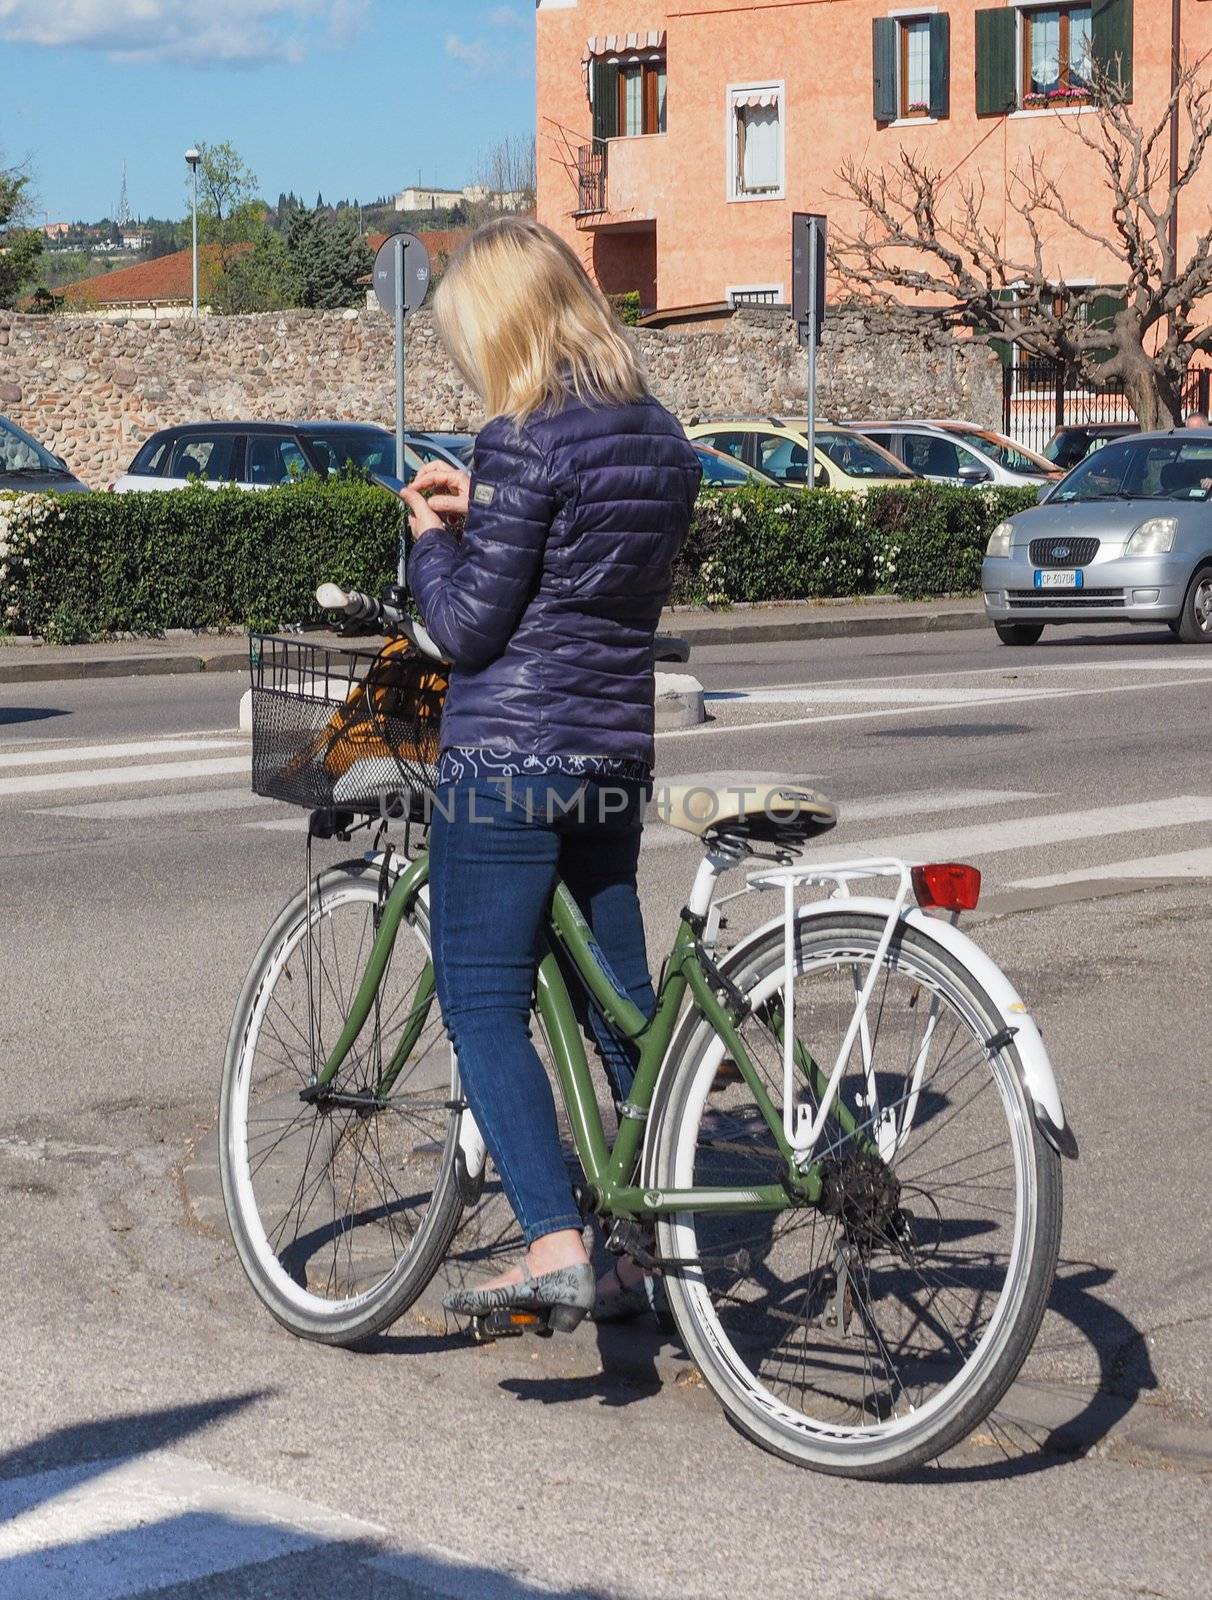 Beatiful woman riding a bike in Verona by claudiodivizia